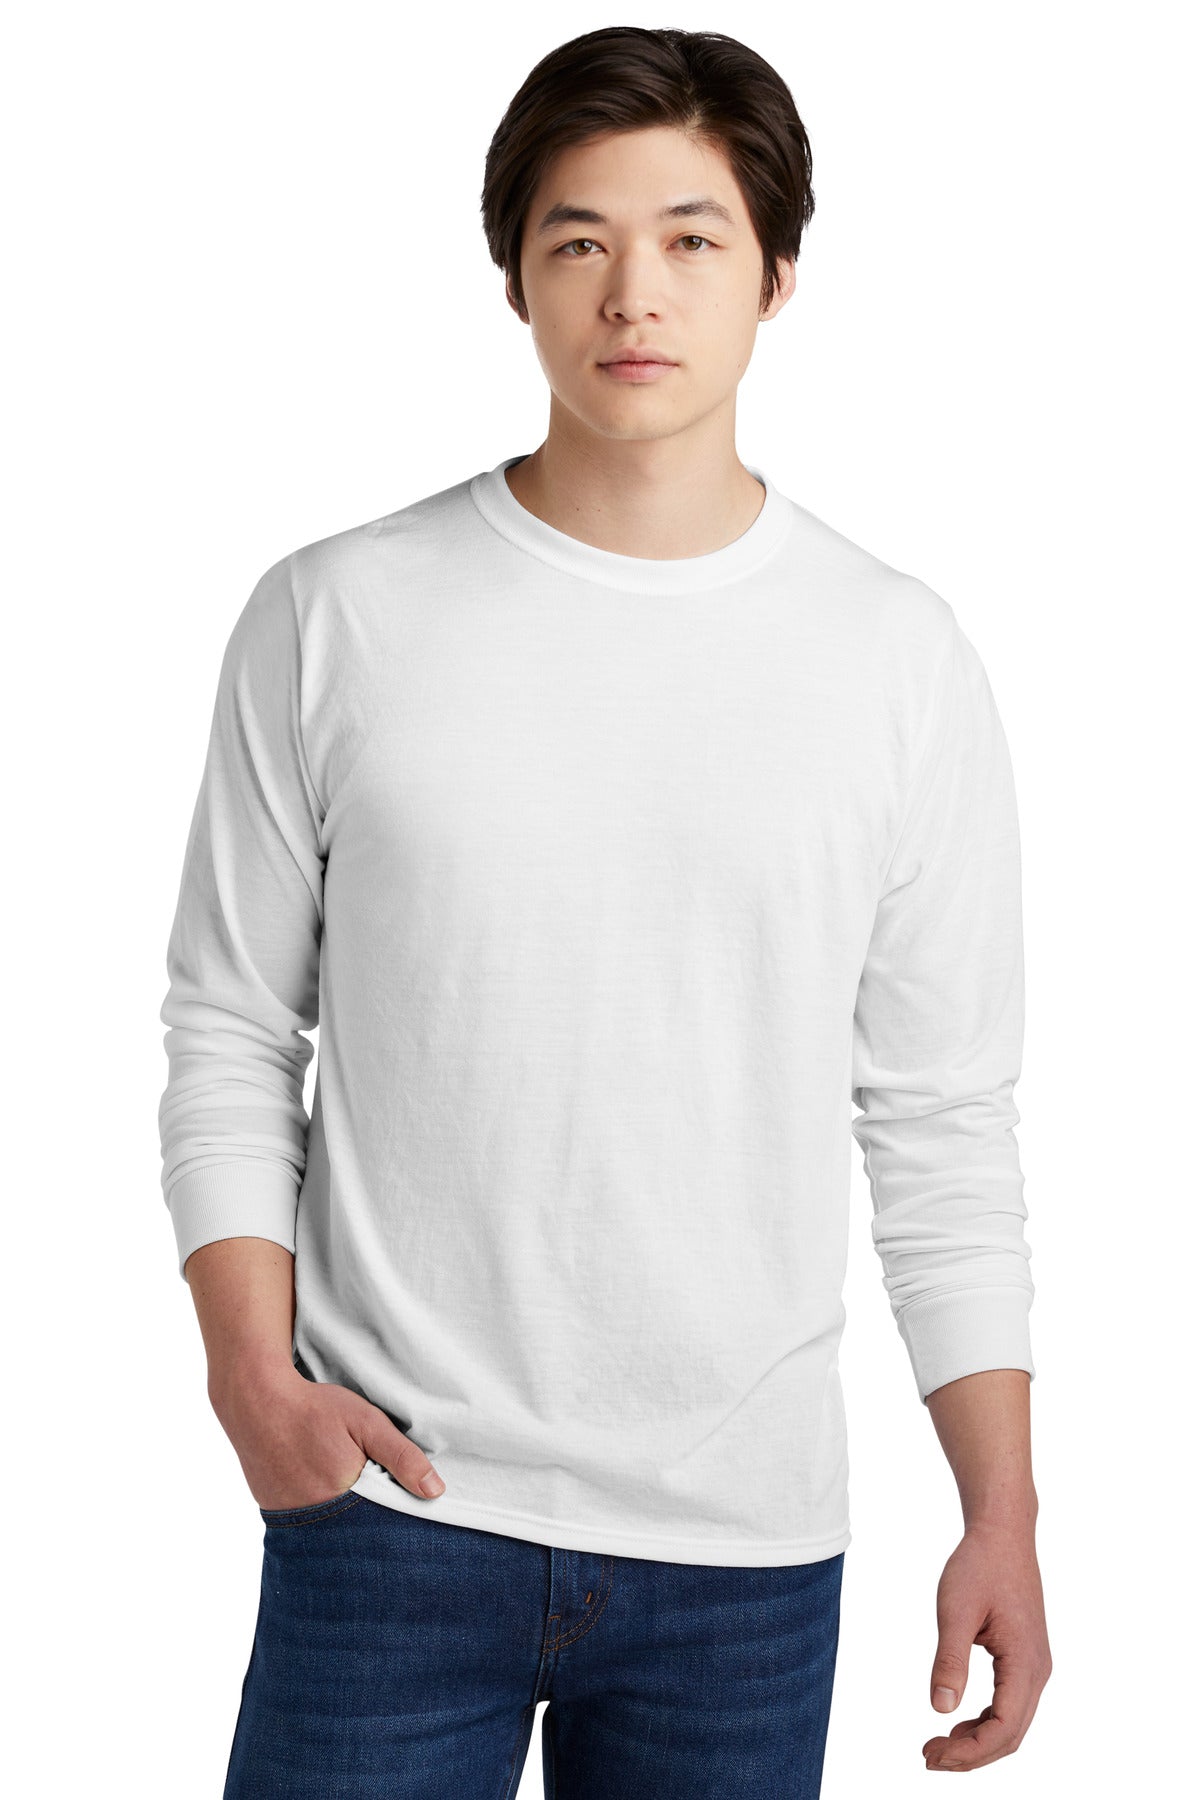 Jerzees Dri-Power 100% Polyester Long Sleeve T-Shirt 21LS